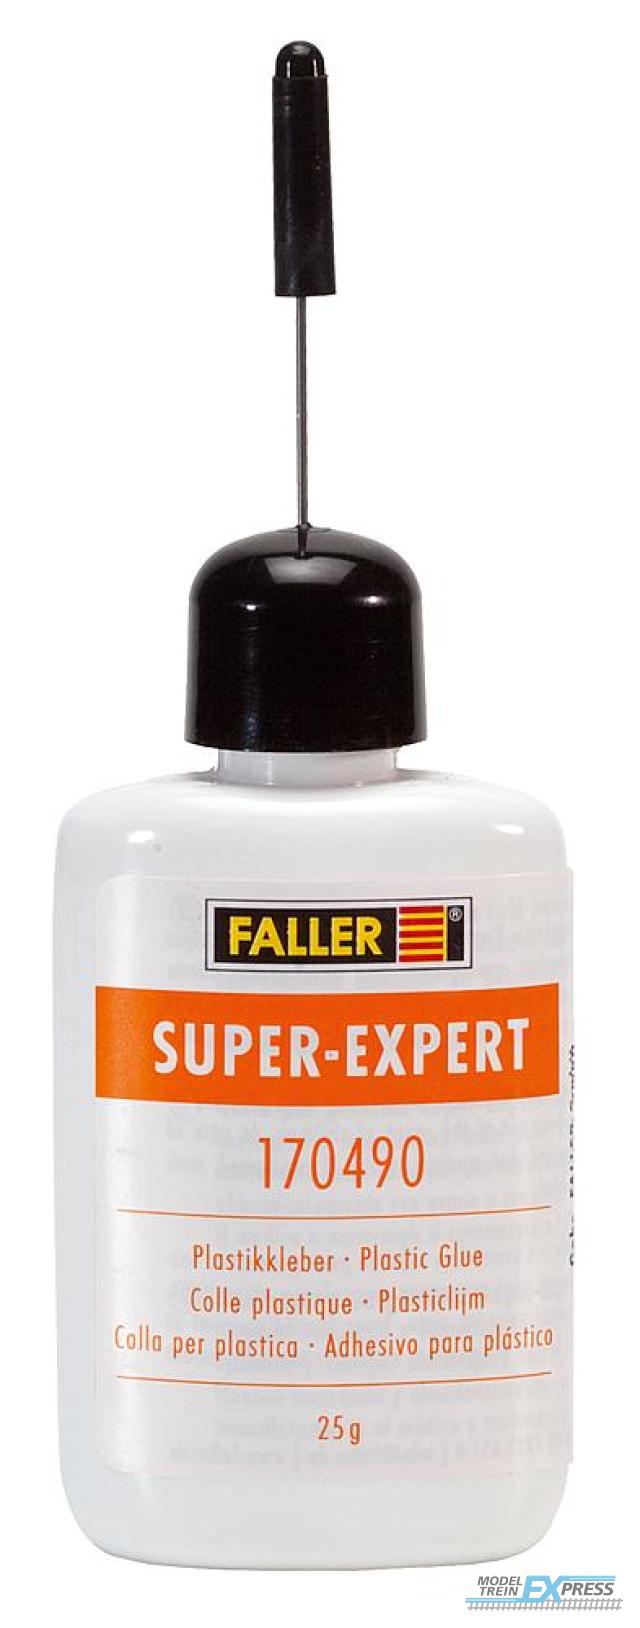 Faller 170490 SUPER-EXPERT PLASTICLIJM 25 G